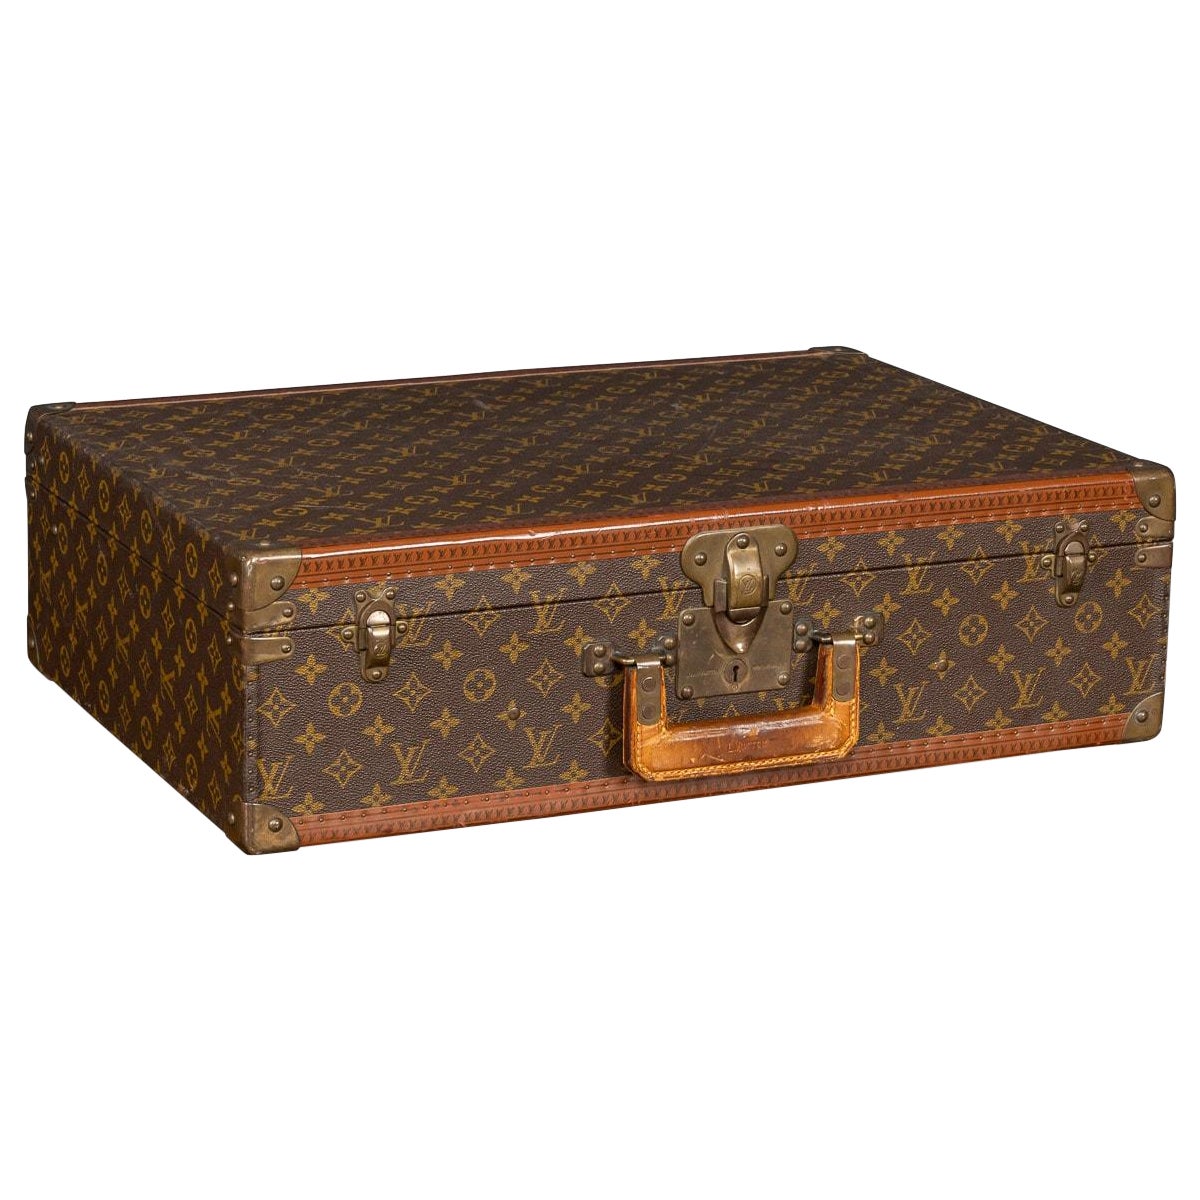 1980s Louis Vuitton Suitcase 60 cm, Louis Vuitton Trunk at 1stDibs